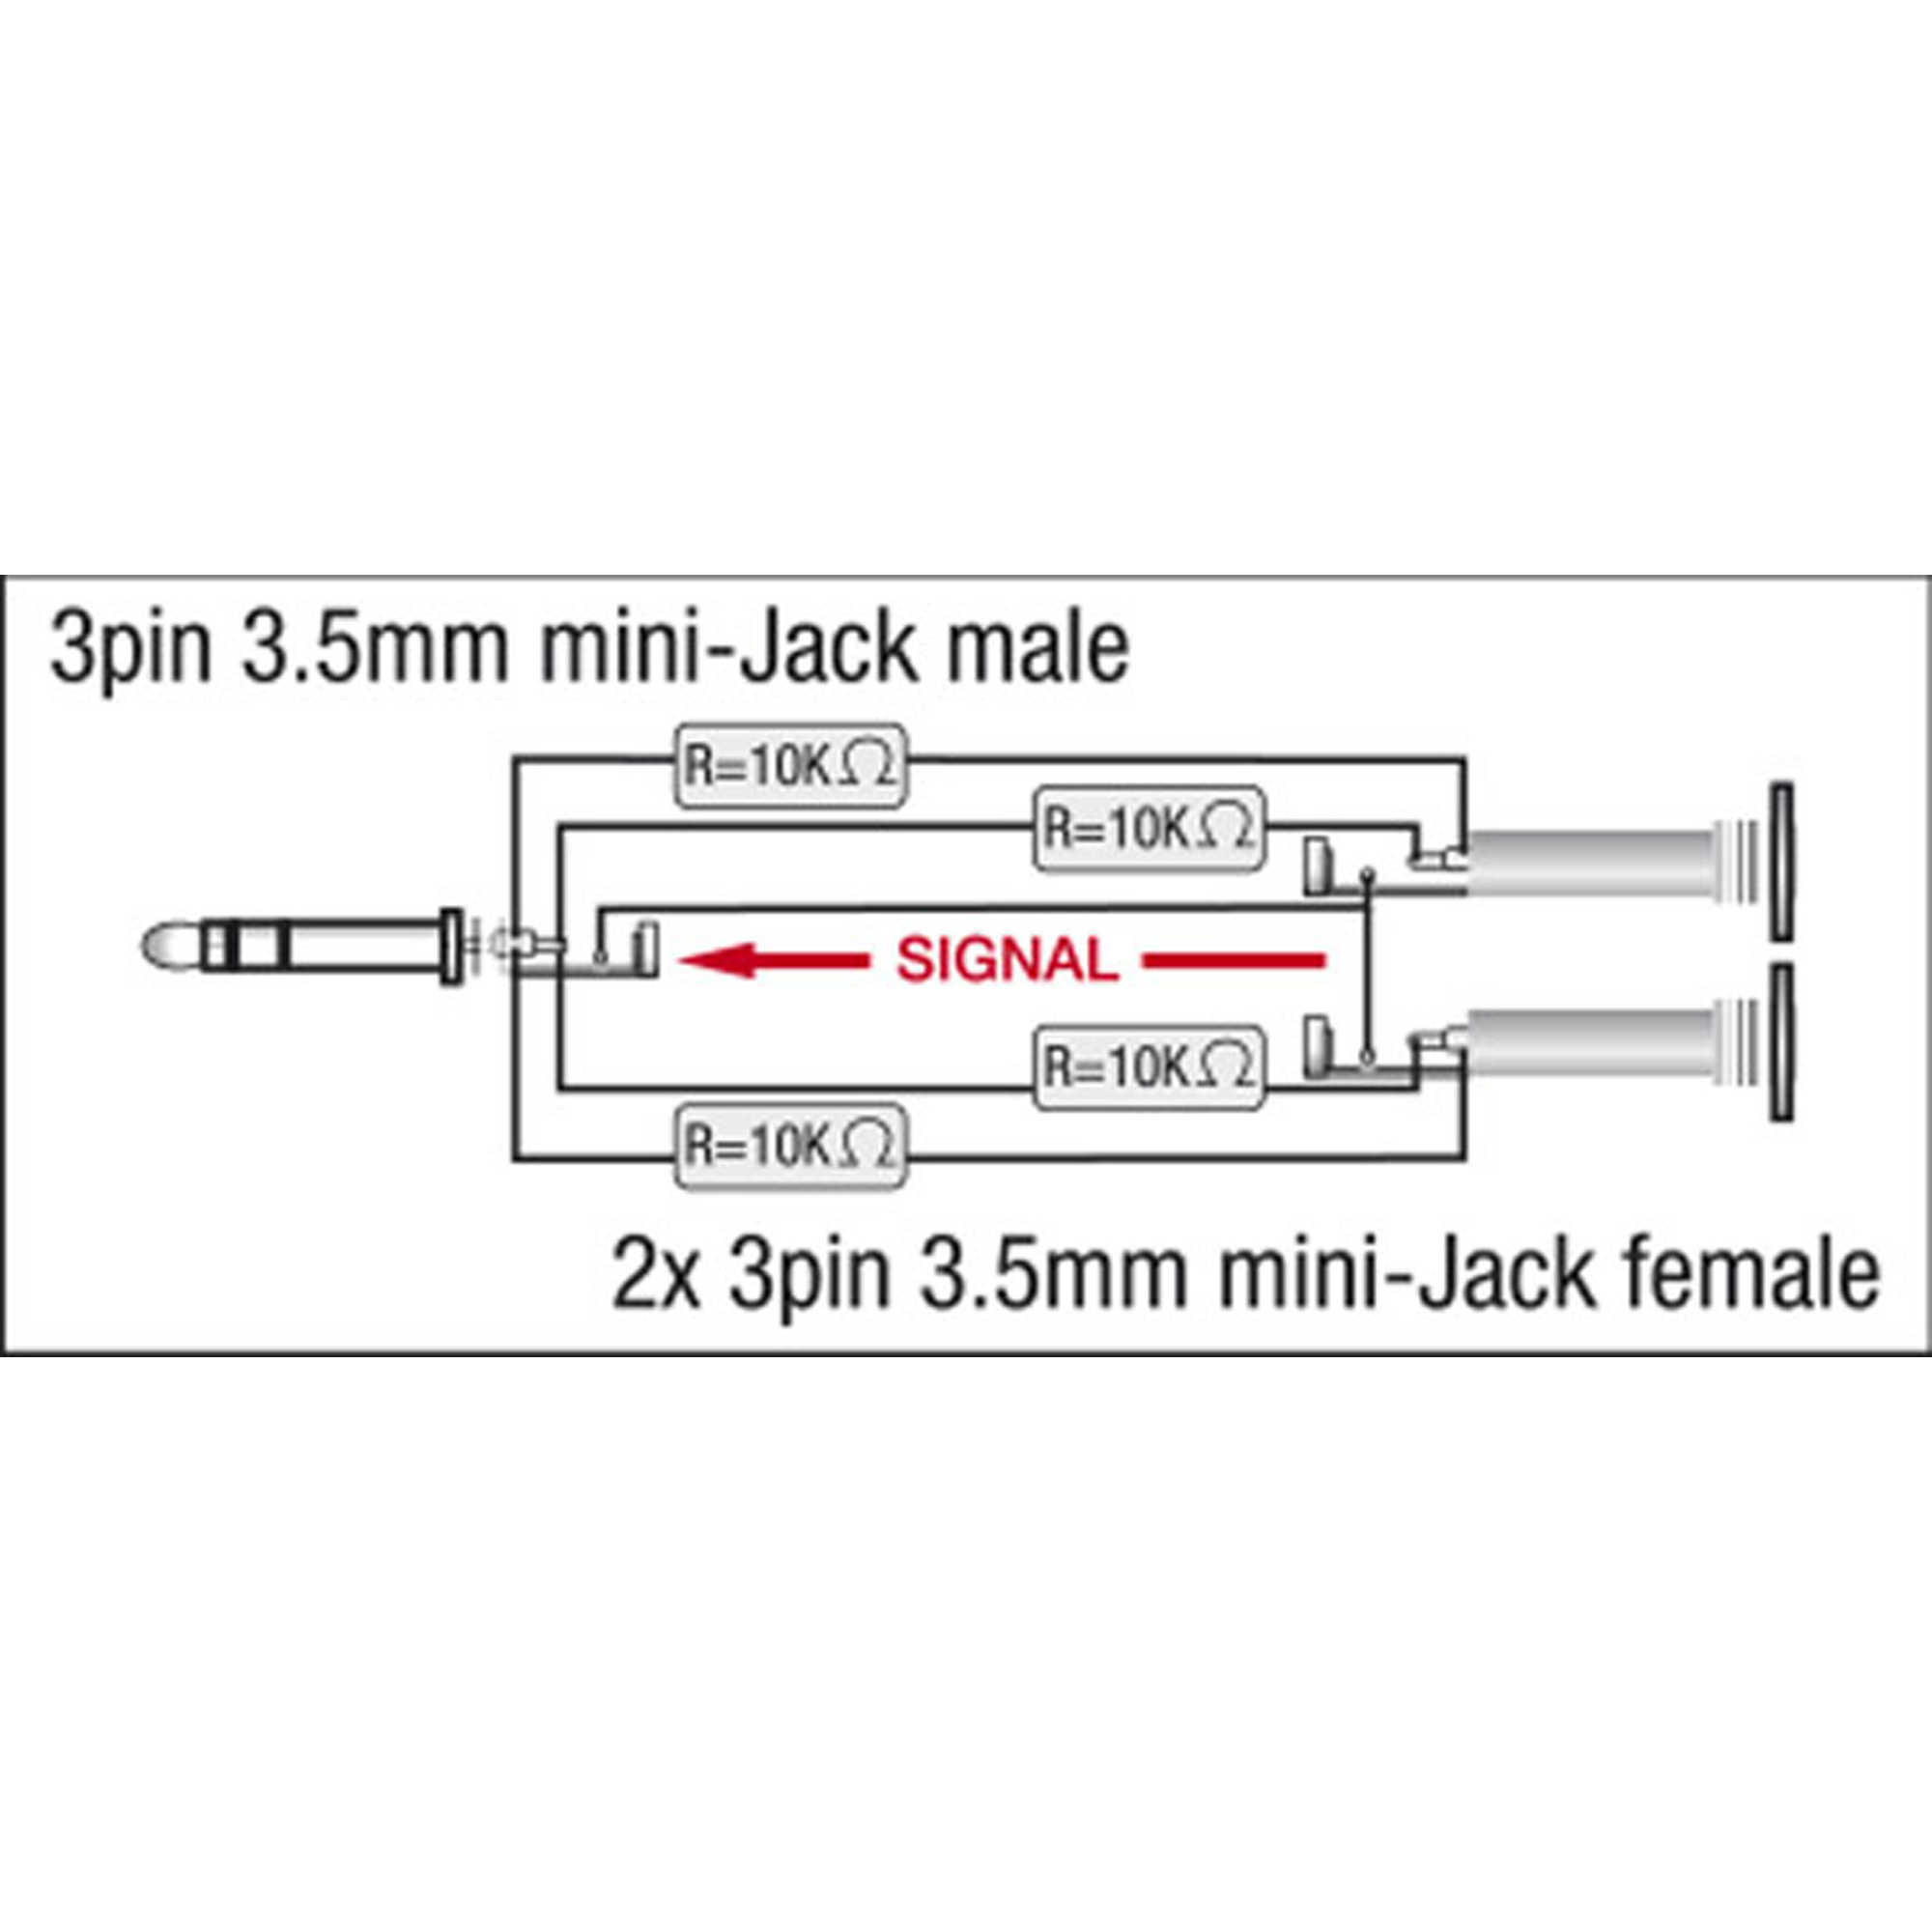 DAP XGA44 - mini-jack/M stereo to 2 x mini-jack/F - incl. 4 x 10 kOhm resistors Inkl. 4 x 10 kOhm Widerstände